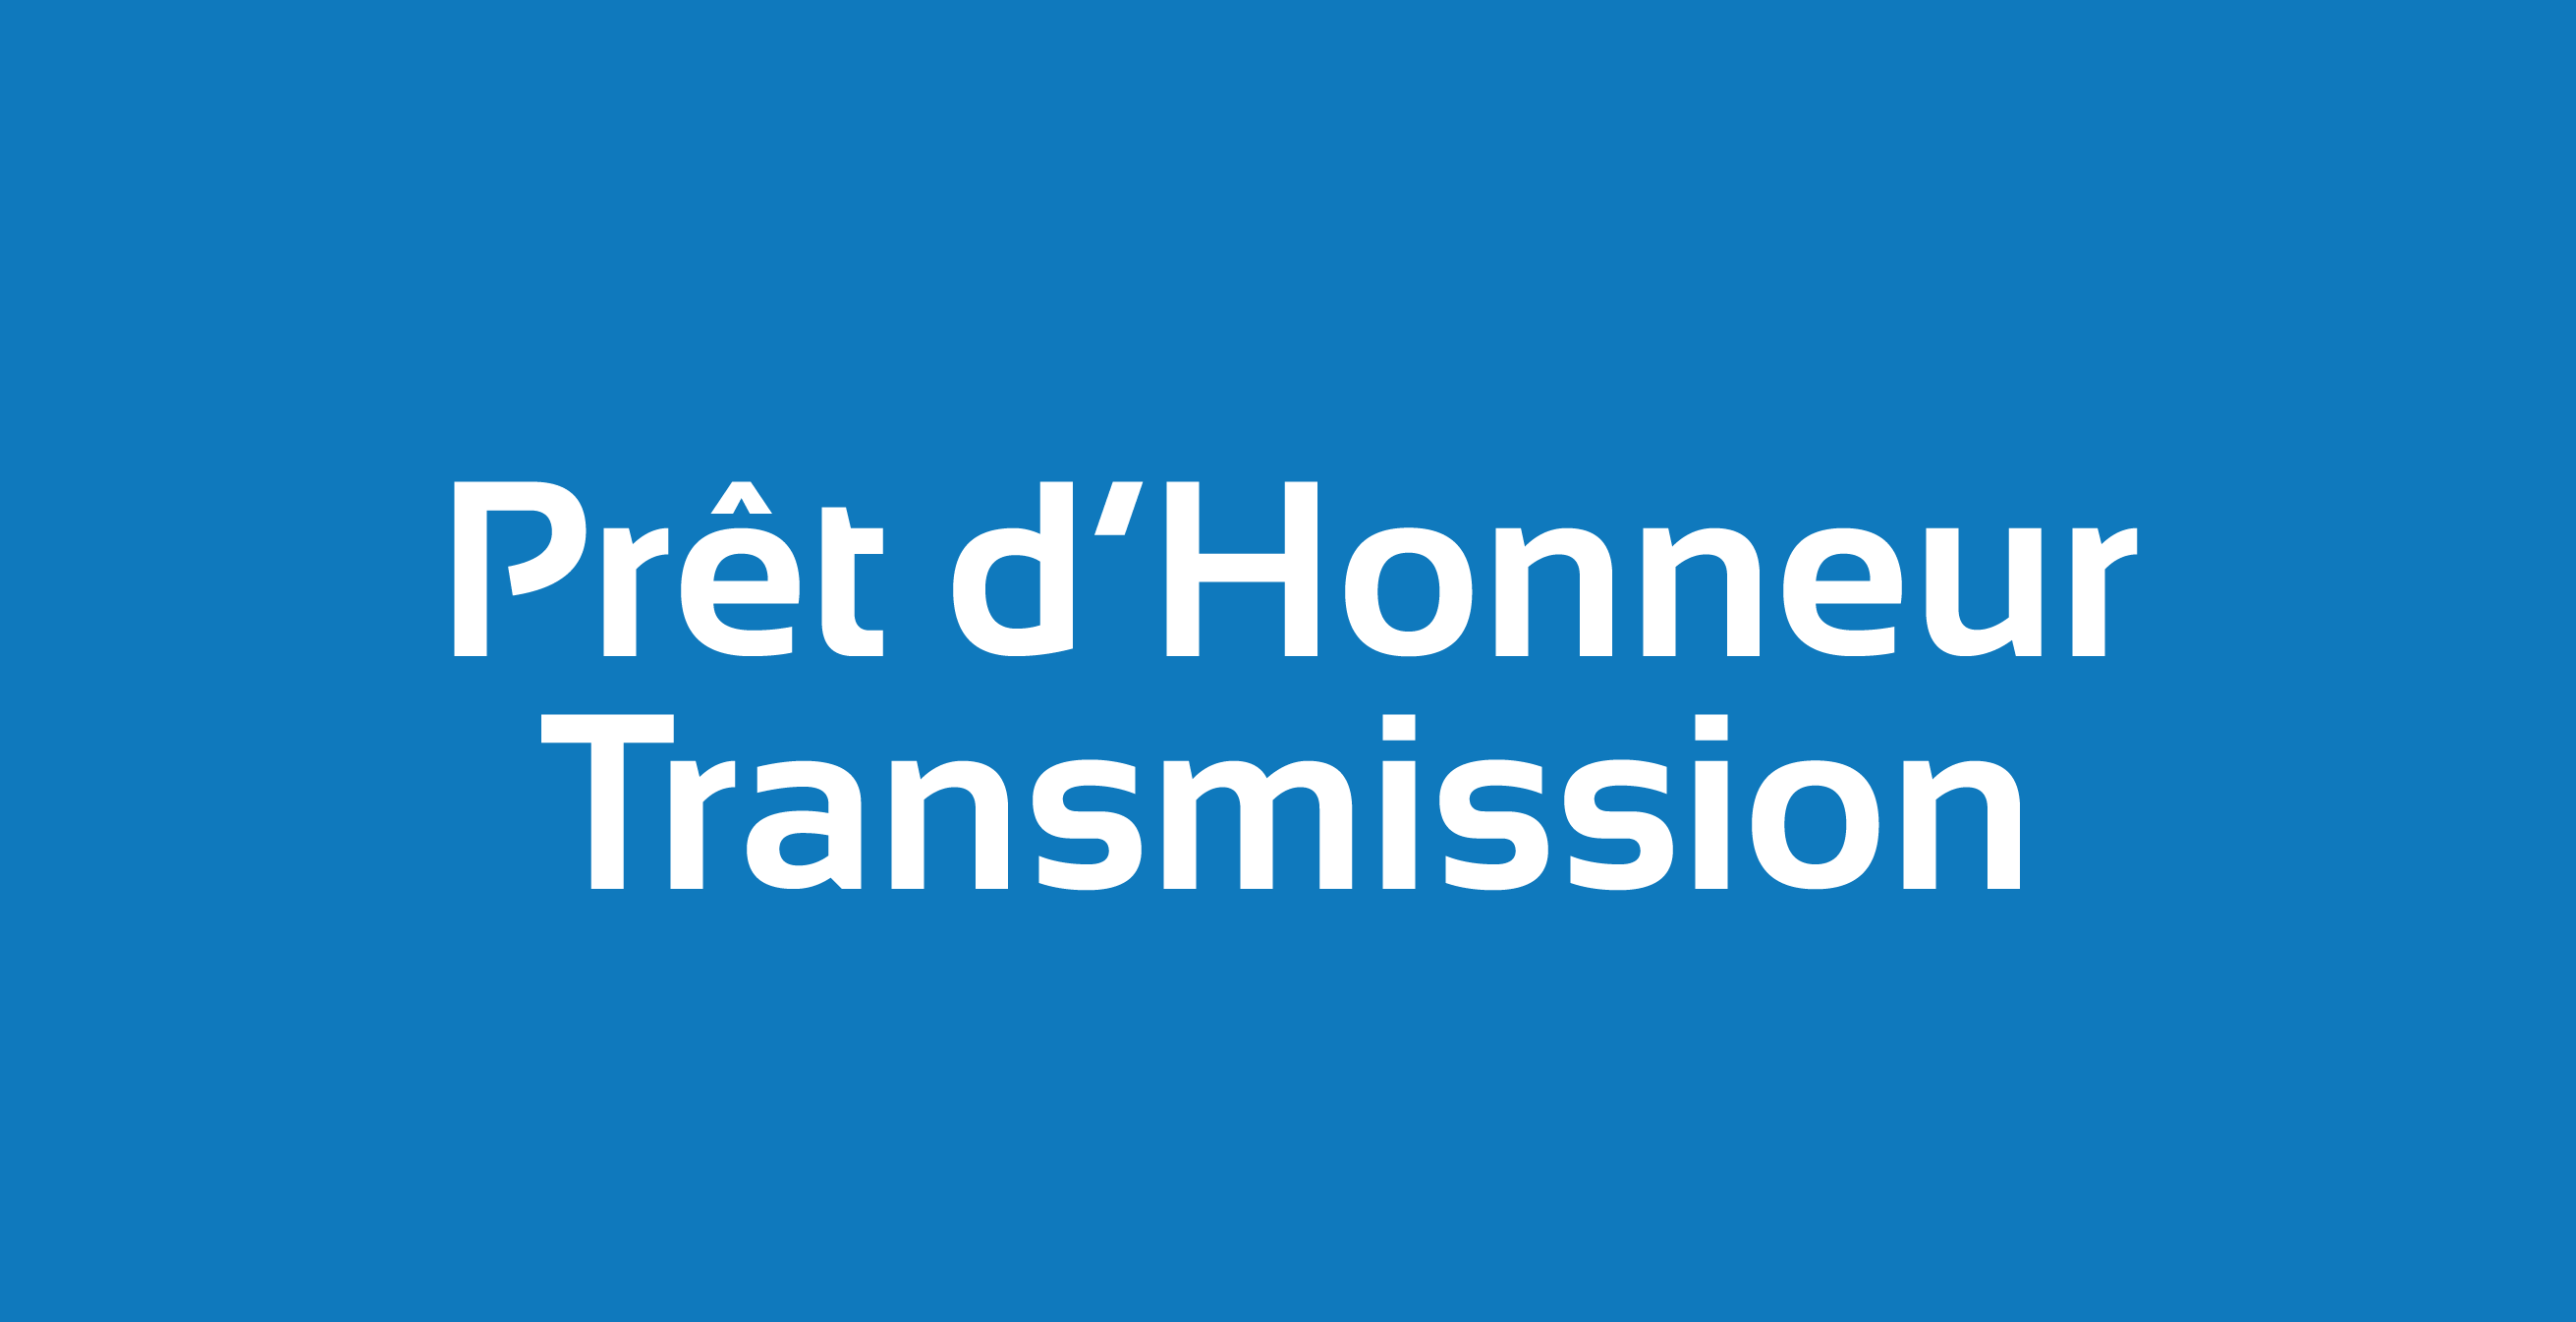 Pret_dHonneur_Transmission_site.png